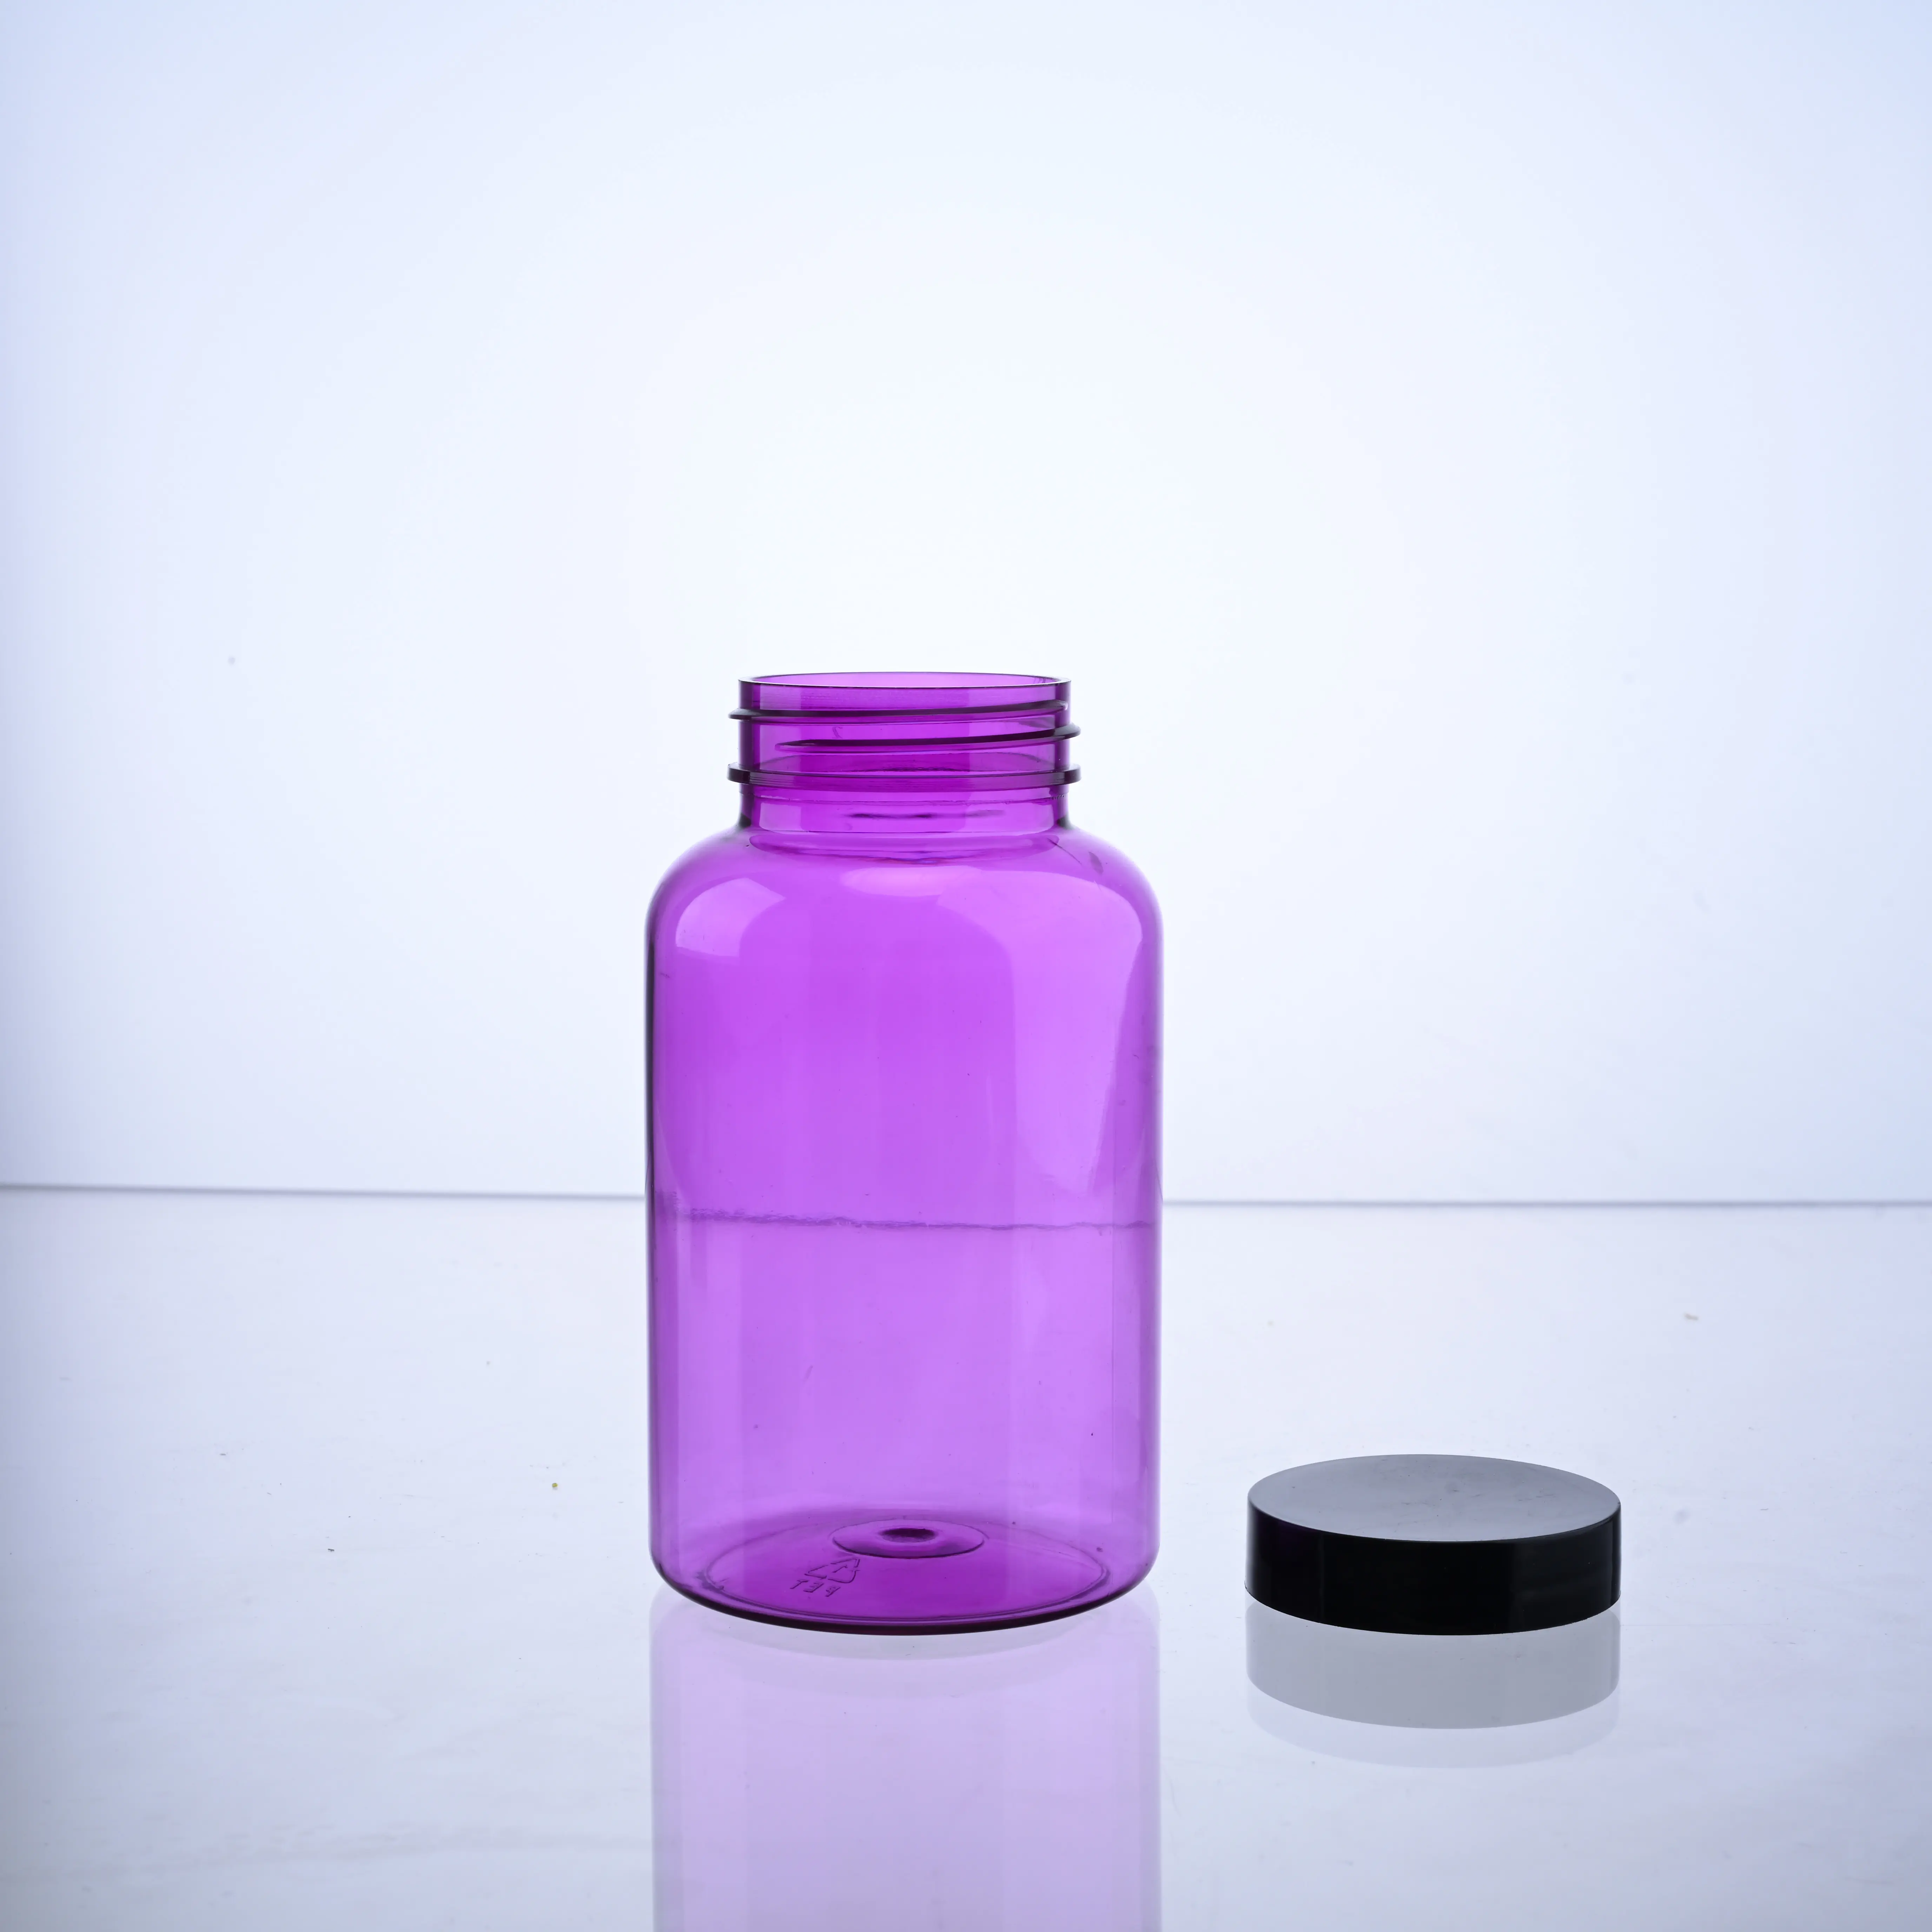 Plastikflasche für Kapseln Tabletten Pillen Vitamine Nahrungsergänzungsmittel Gesundheitspflege Frost PS-Flaschen